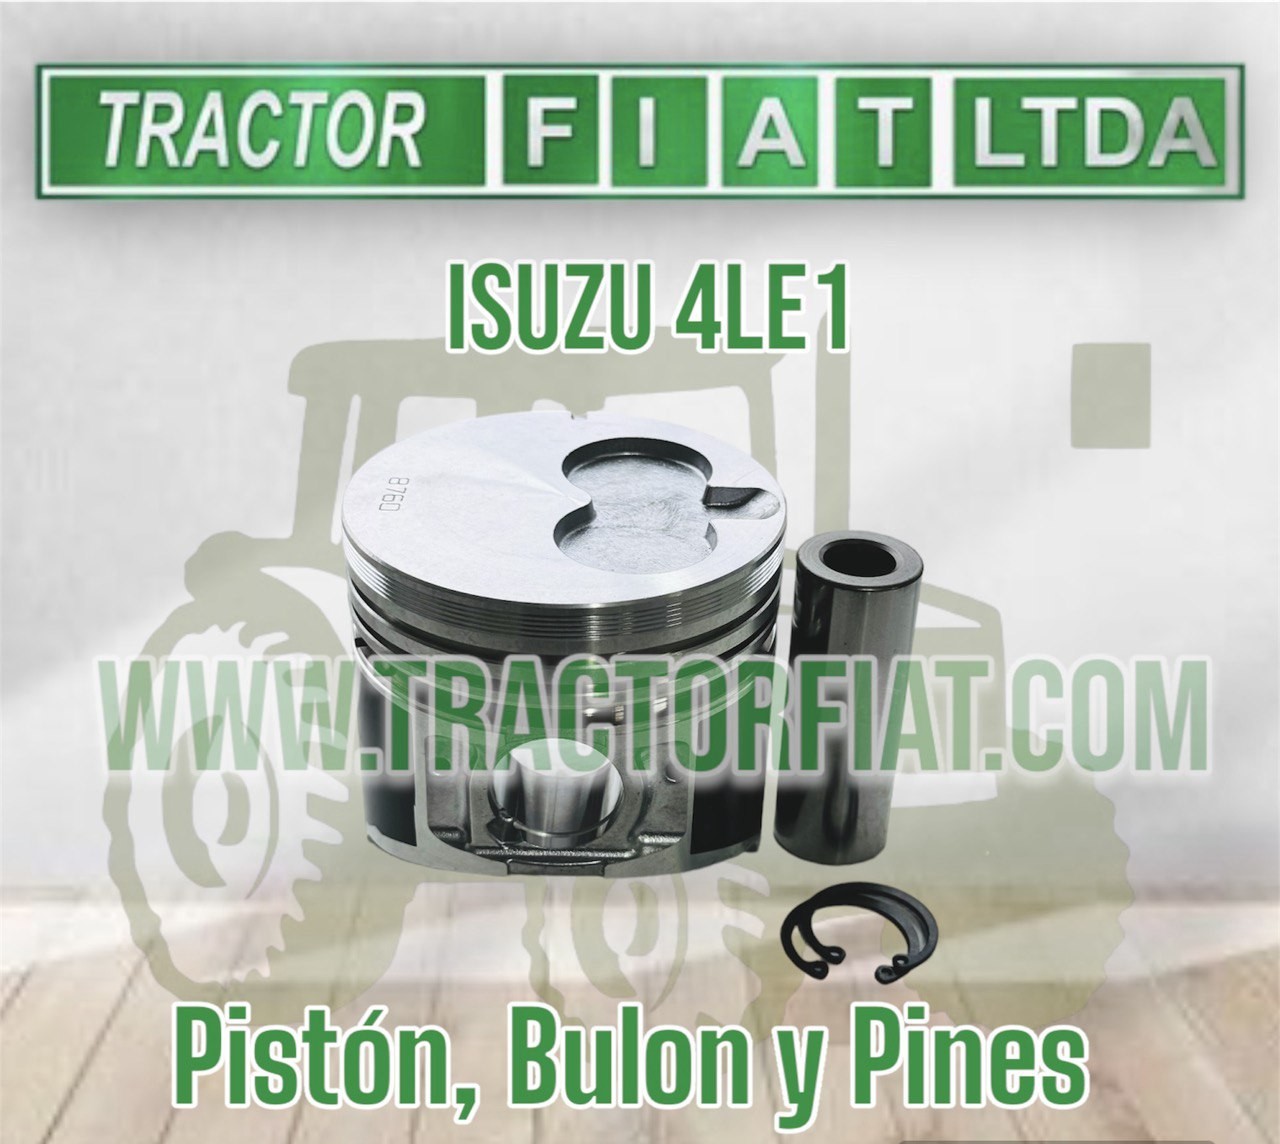 PISTON ,BULON Y PINES - MOTOR ISUZU 4LE1